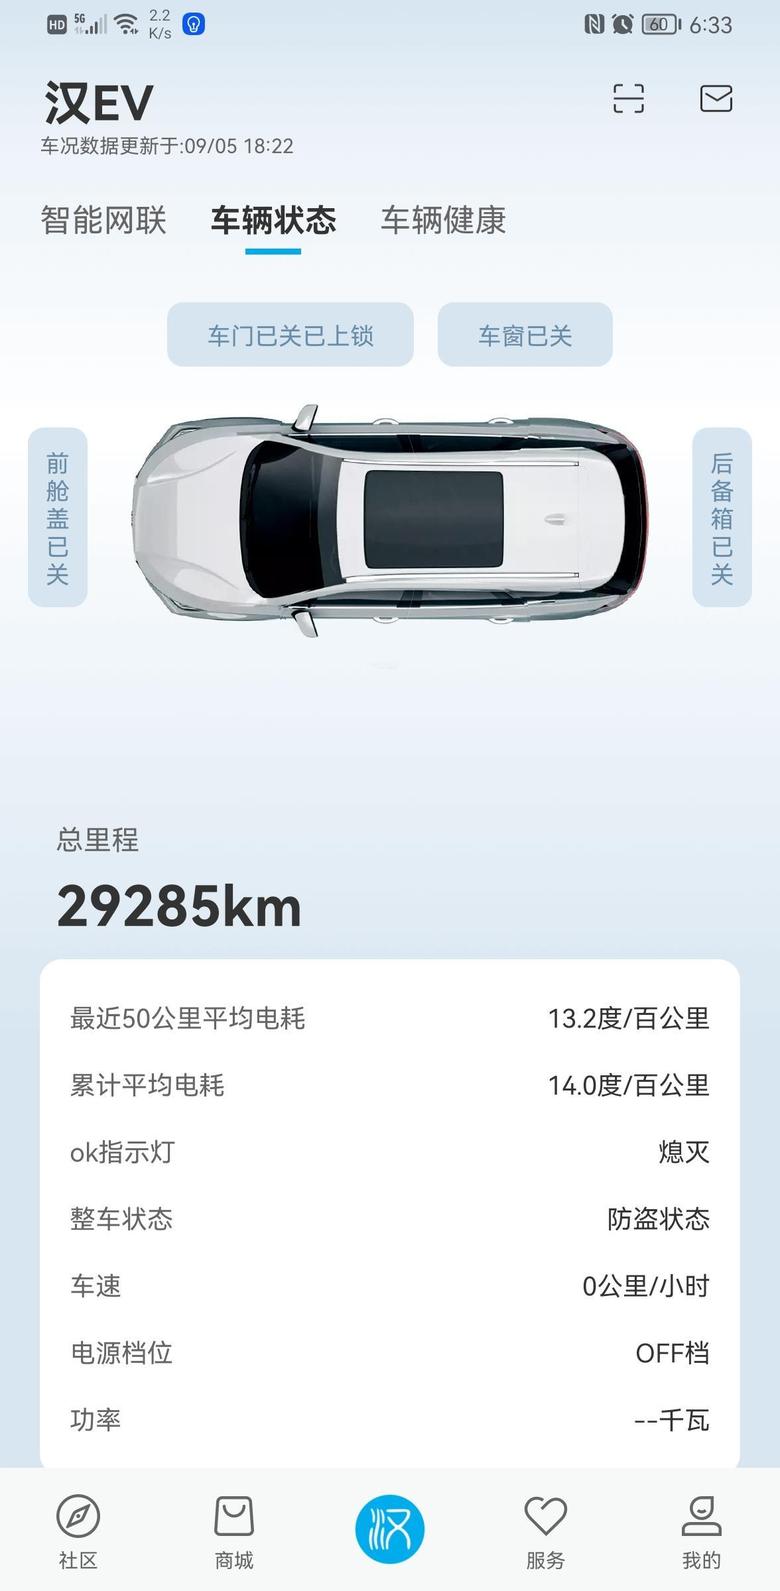 汉ev 2020年9月23号提车到今天已经29285了，接下来还有半个月，如果按平时一样用车，破3万丢三电终身质保是肯定的了。